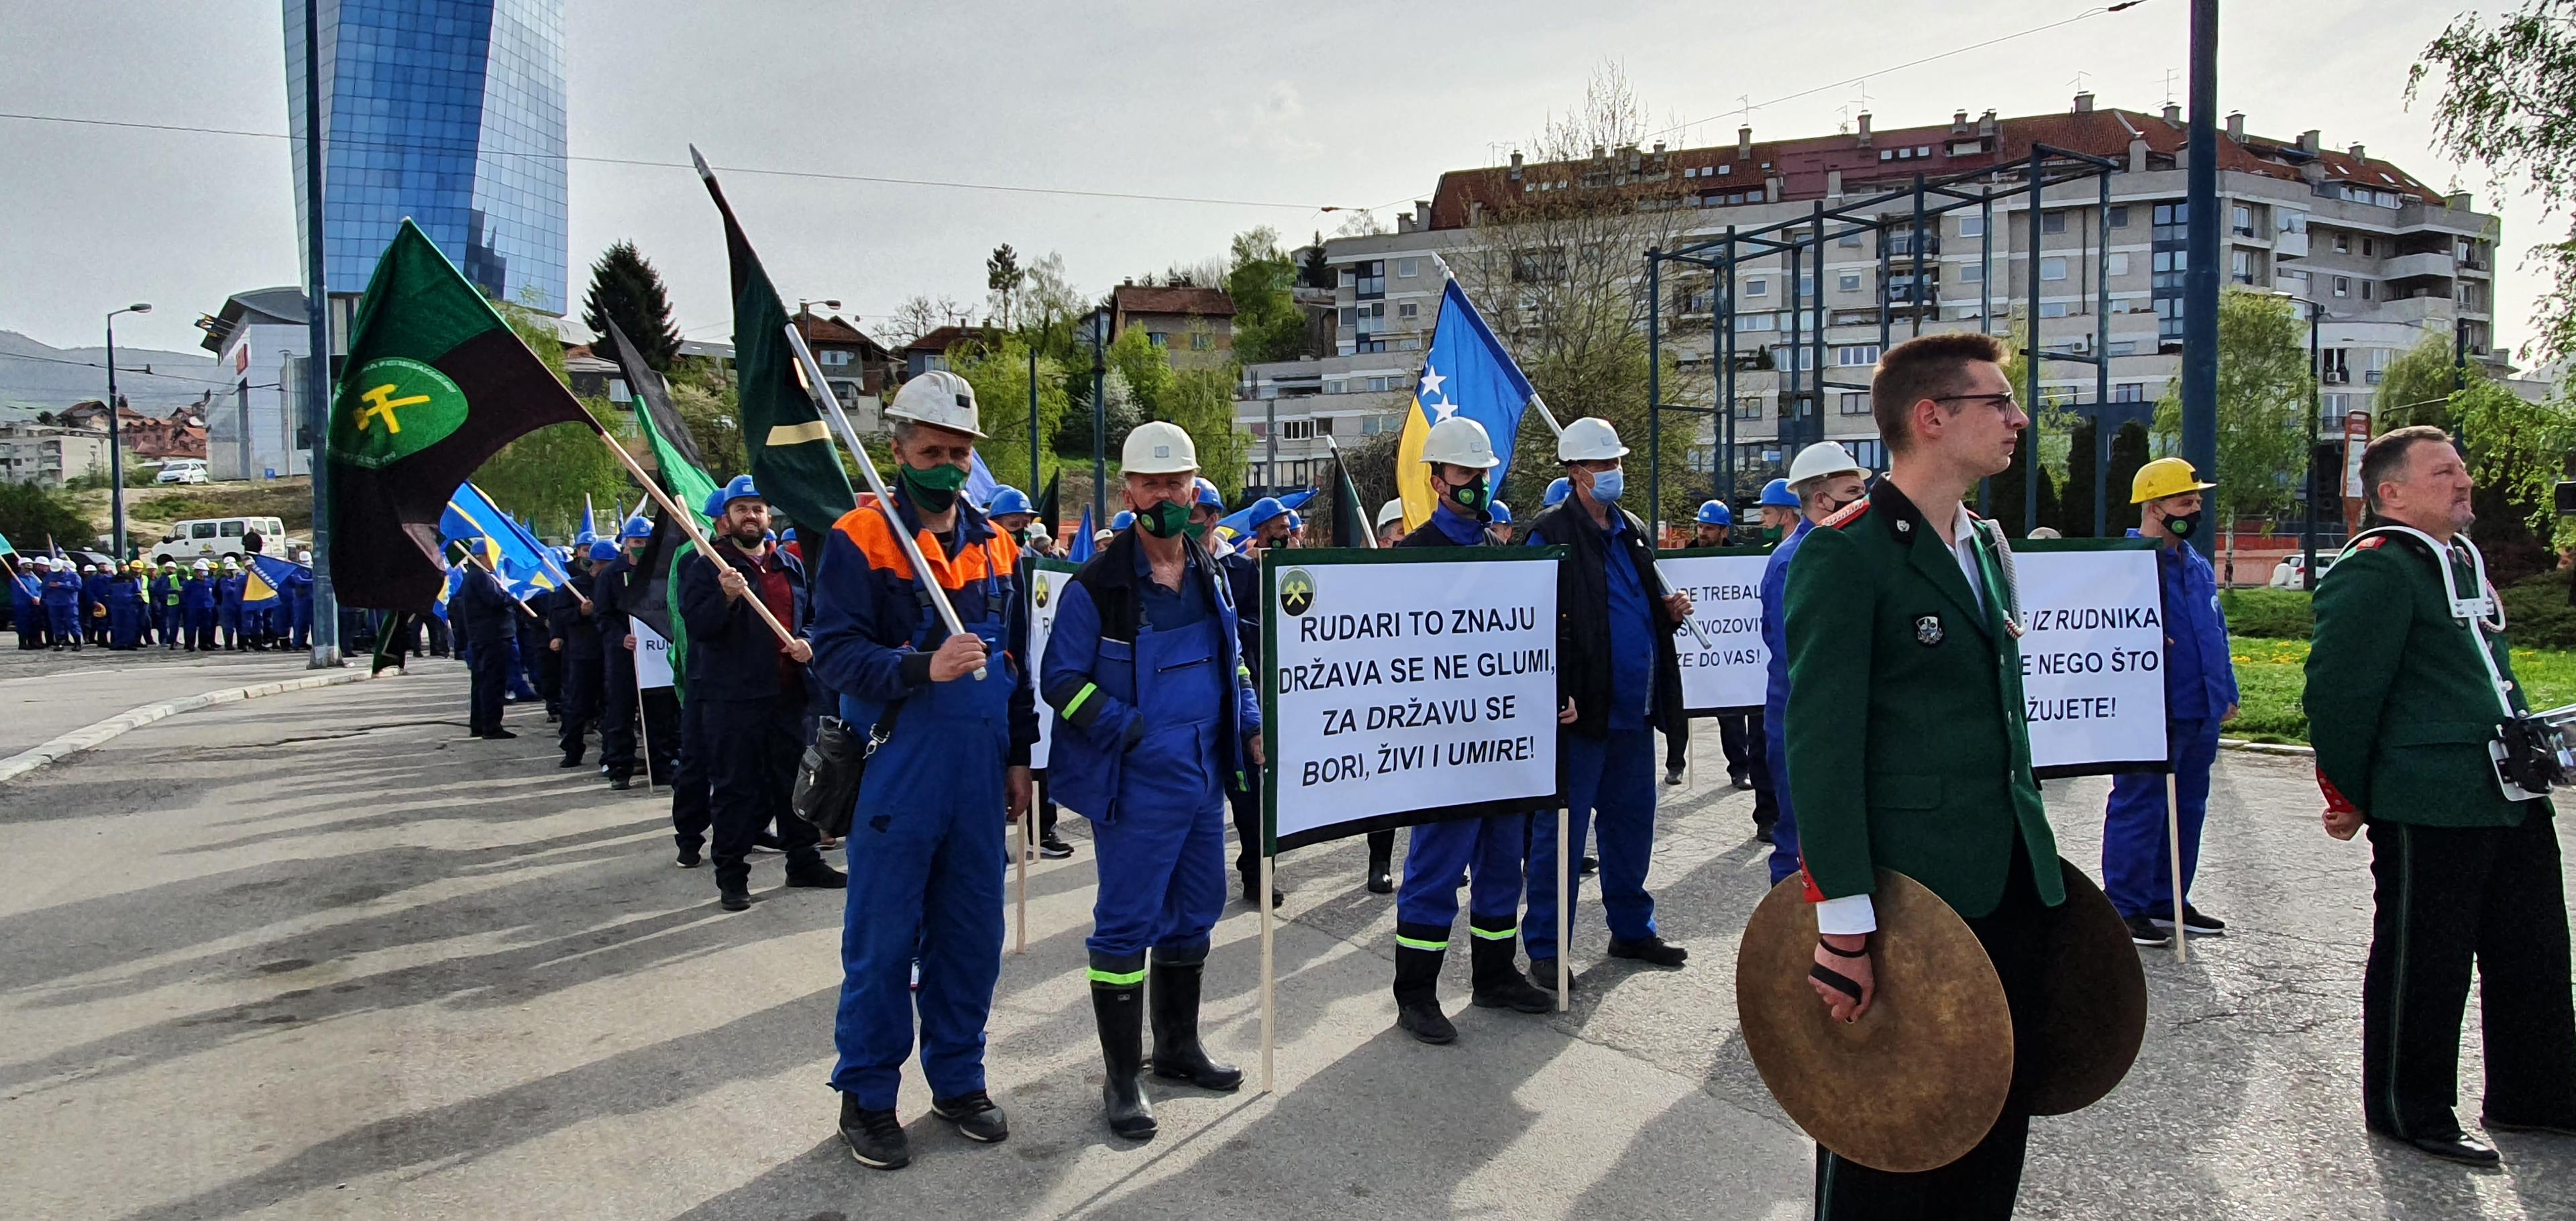 Rudari jutros u Sarajevu:  Neće dozvoliti otpuštanja - Avaz